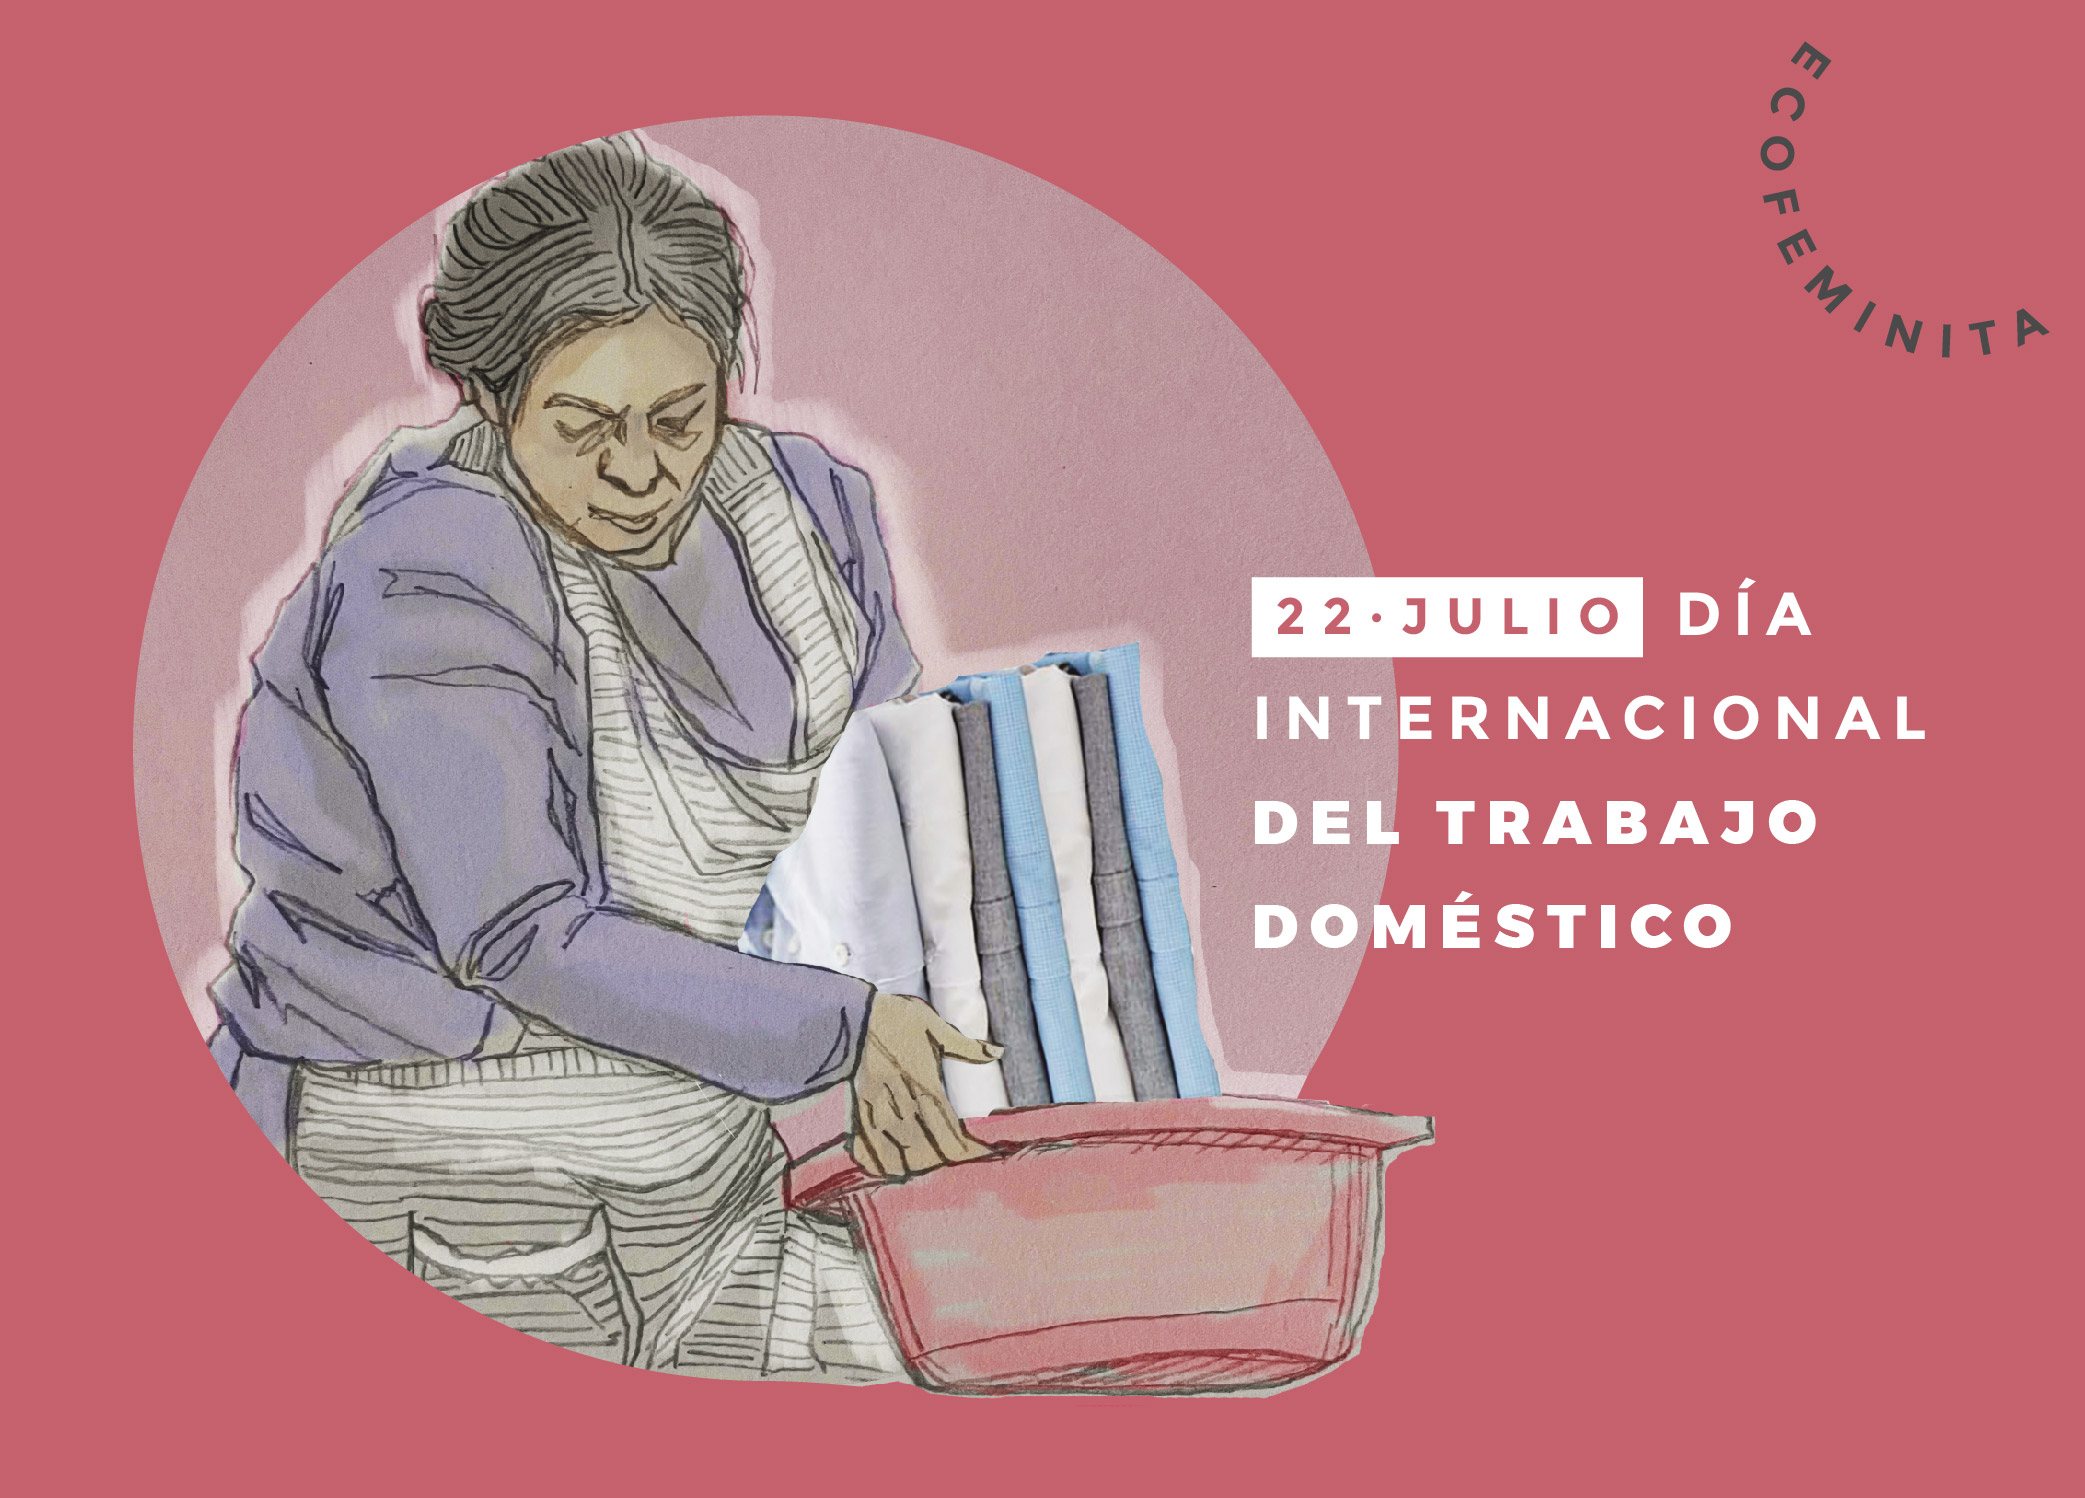 Internacional de Trabajo Doméstico: Cuidar es trabajar - Ecofeminita